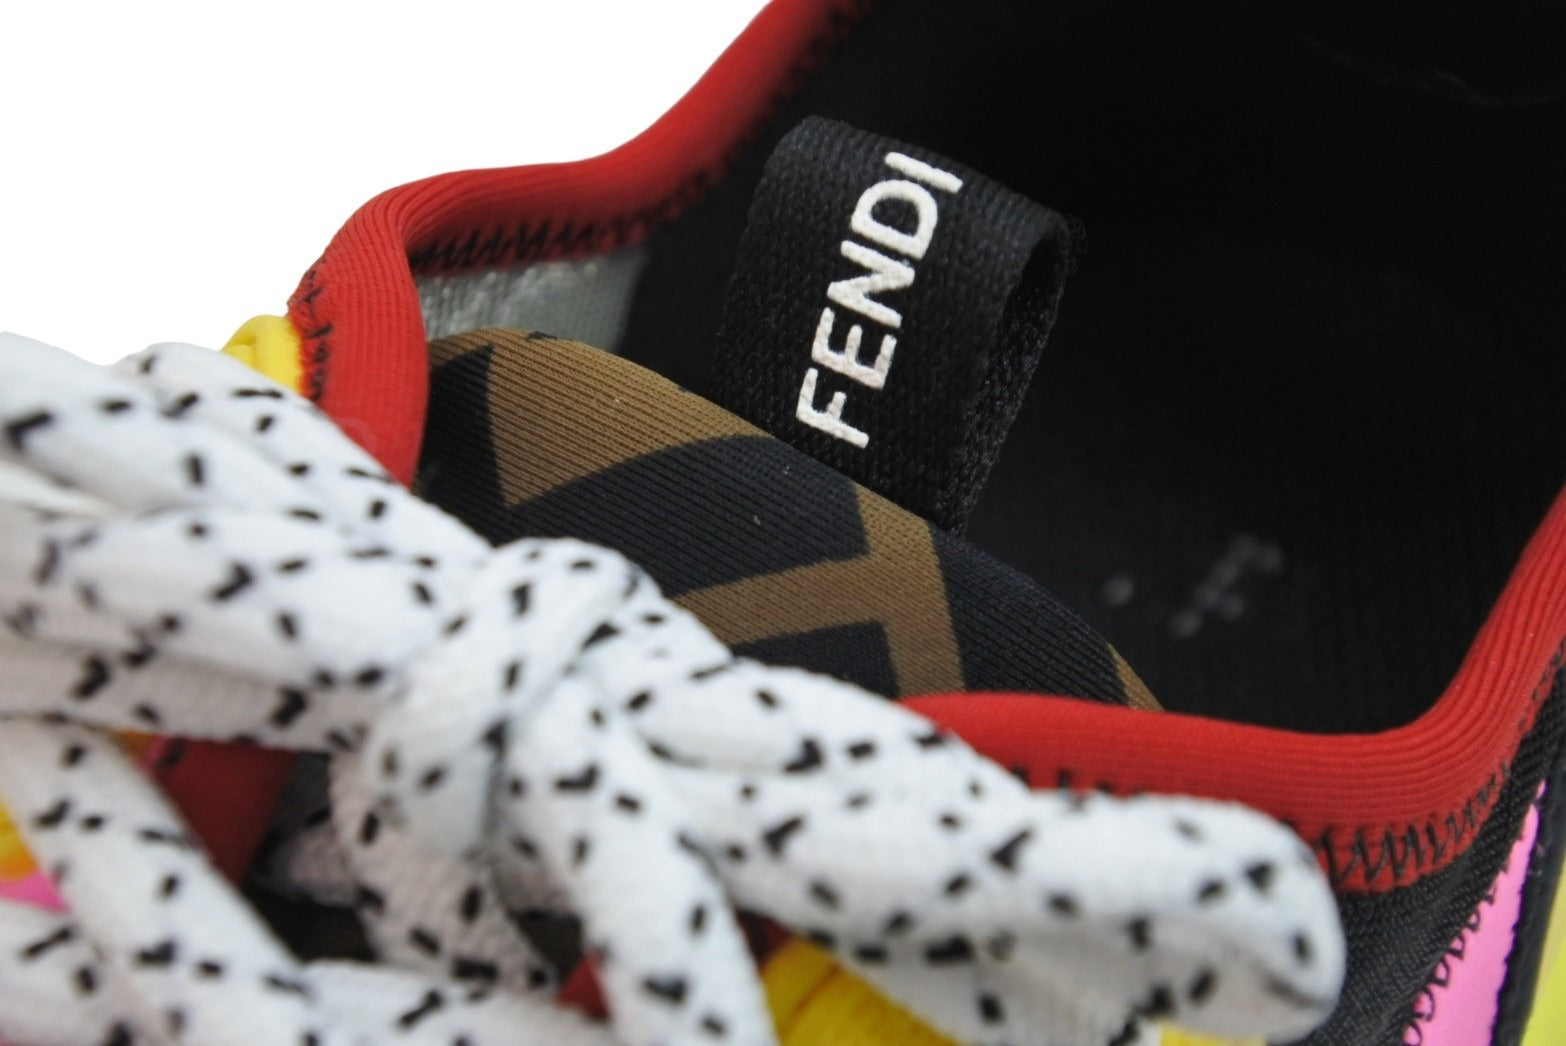 FENDI フェンディ スニーカー 靴 ズッカ柄 8E6912 イタリア製